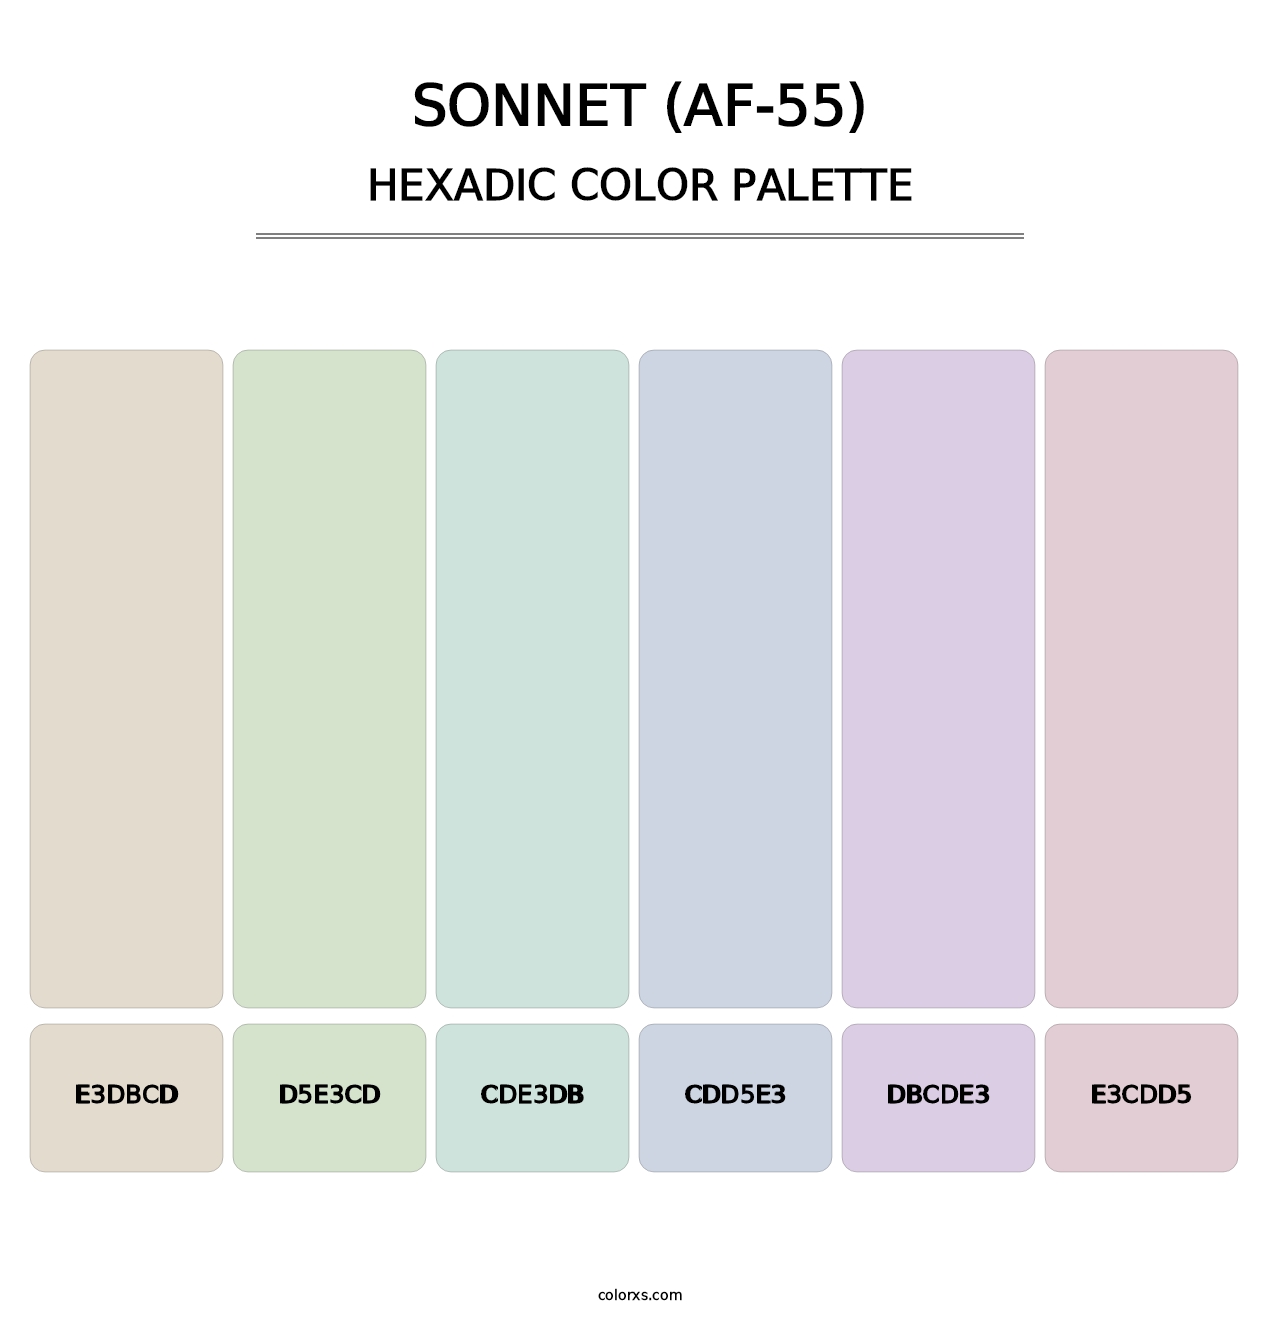 Sonnet (AF-55) - Hexadic Color Palette